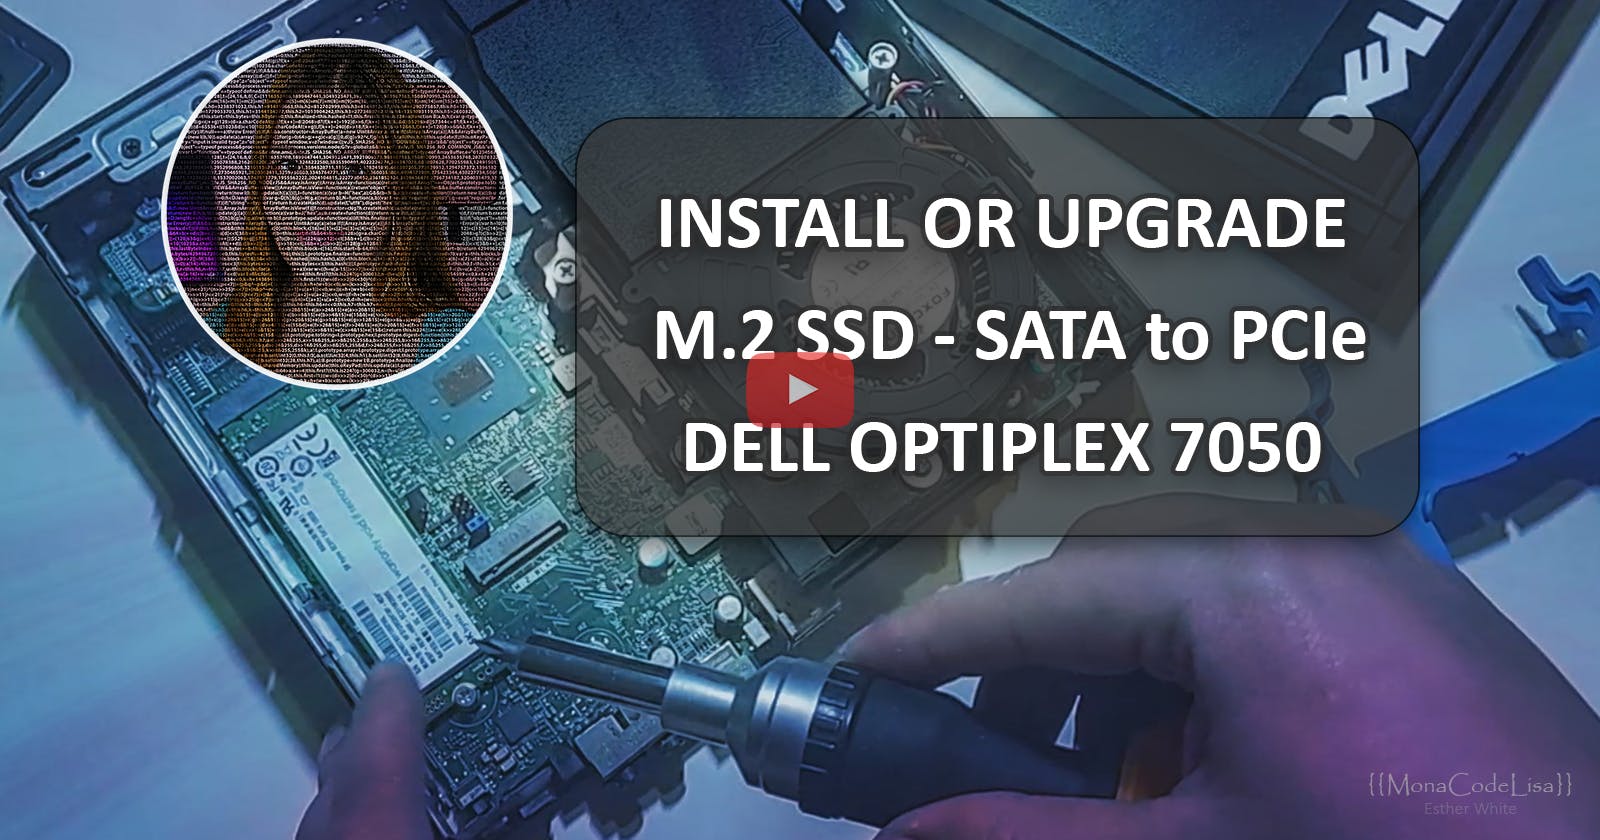 Install or Upgrade M.2 SSD - Dell Optiplex 7050 micro